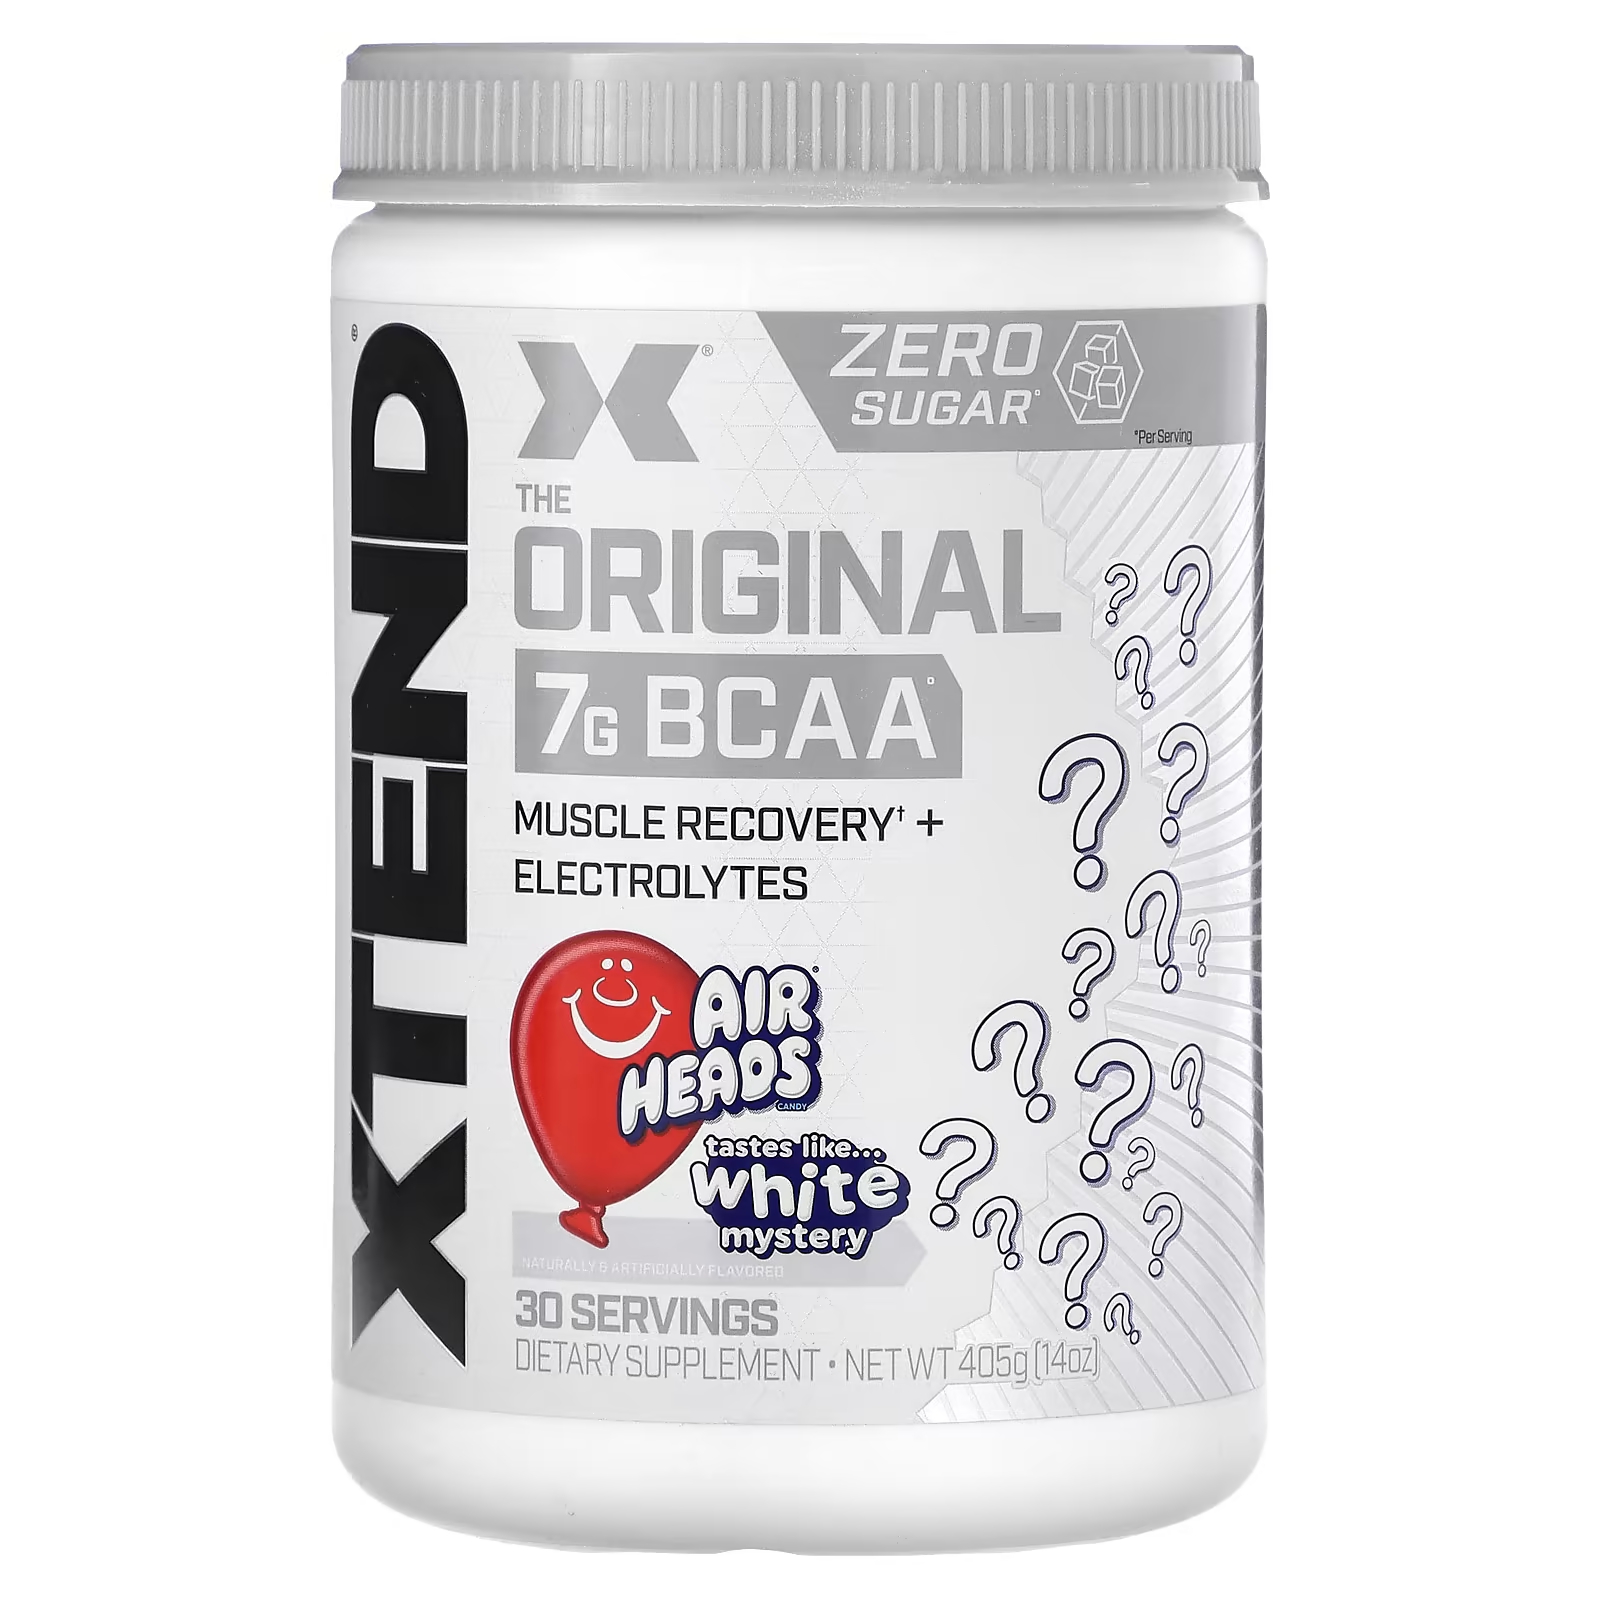 Пищевая добавка Xtend The Original 7G BCAA xtend the original 7 г аминокислот с разветвленной цепью bcaa со вкусом тропических фруктов 1 26 кг 2 78 фунта